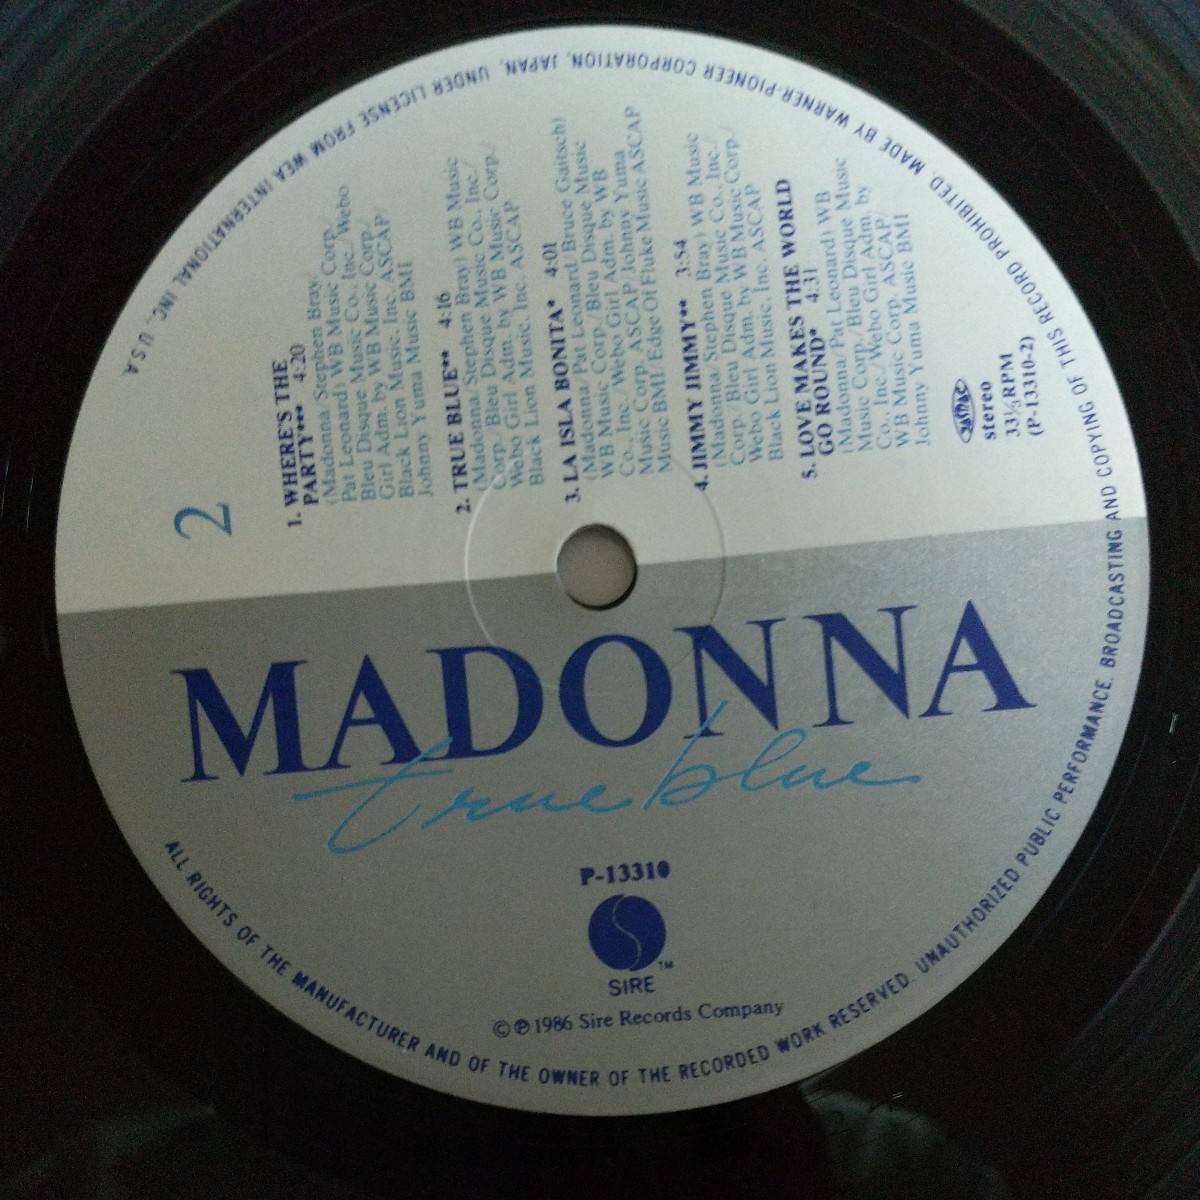 【LP】マドンナ MADONNA/トゥルー・ブルー true blue ※盤面・ジャケットほぼ新品同様※　品番)P-13310　1986年発売_画像9